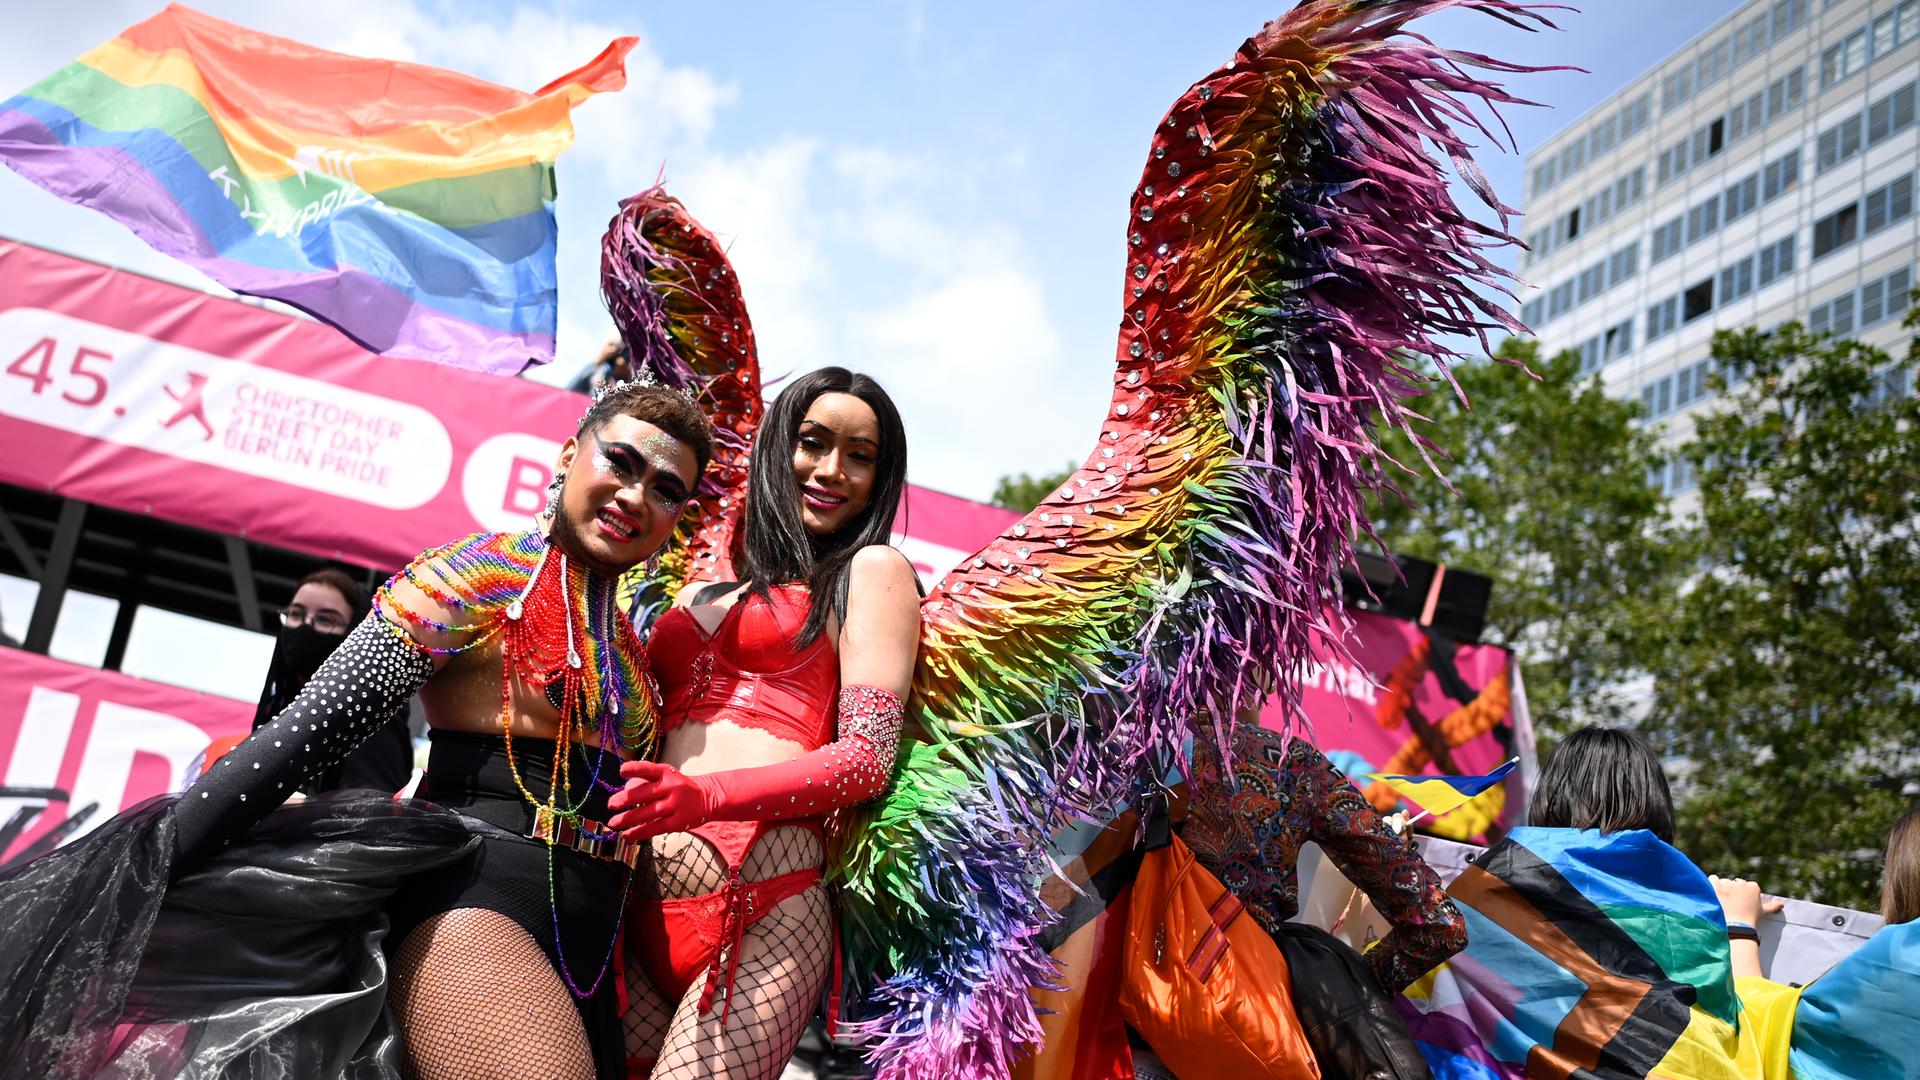 Teilnehmer der 45. Berlin Pride-Parade zum Christopher Street Day in bunten Kostümen.